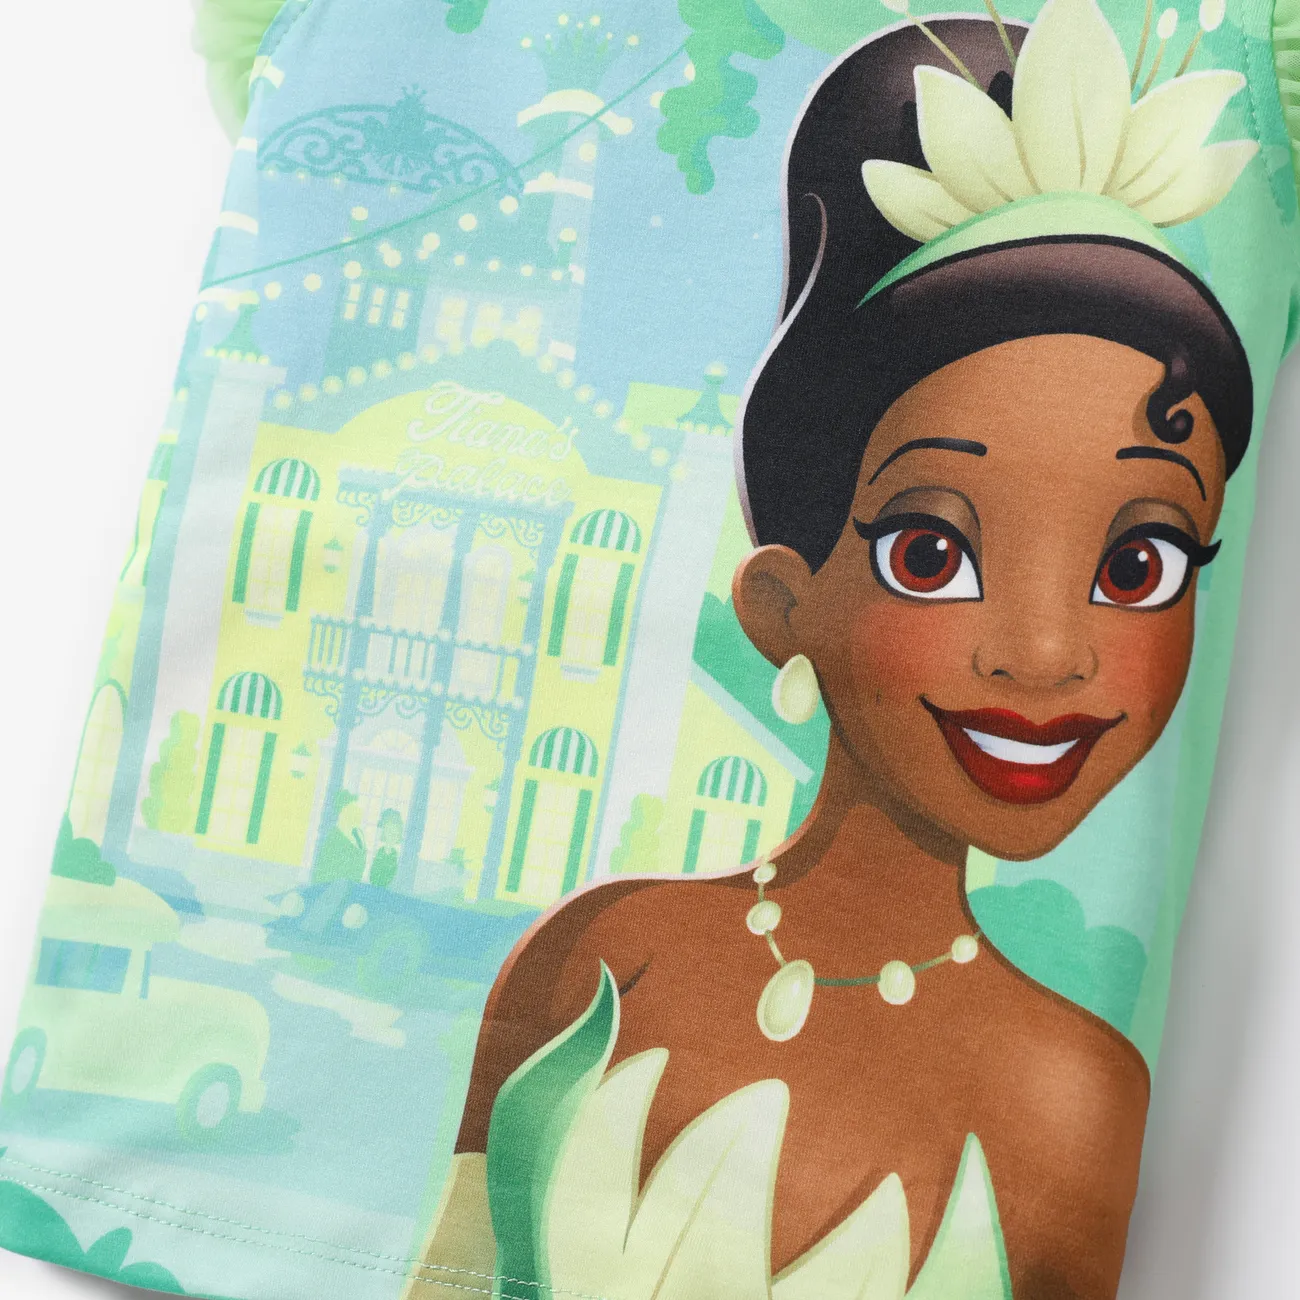 Disney Princess Toddler Girl Naia™ Character Print with Ruffled Mesh Sleeve Top Green big image 1